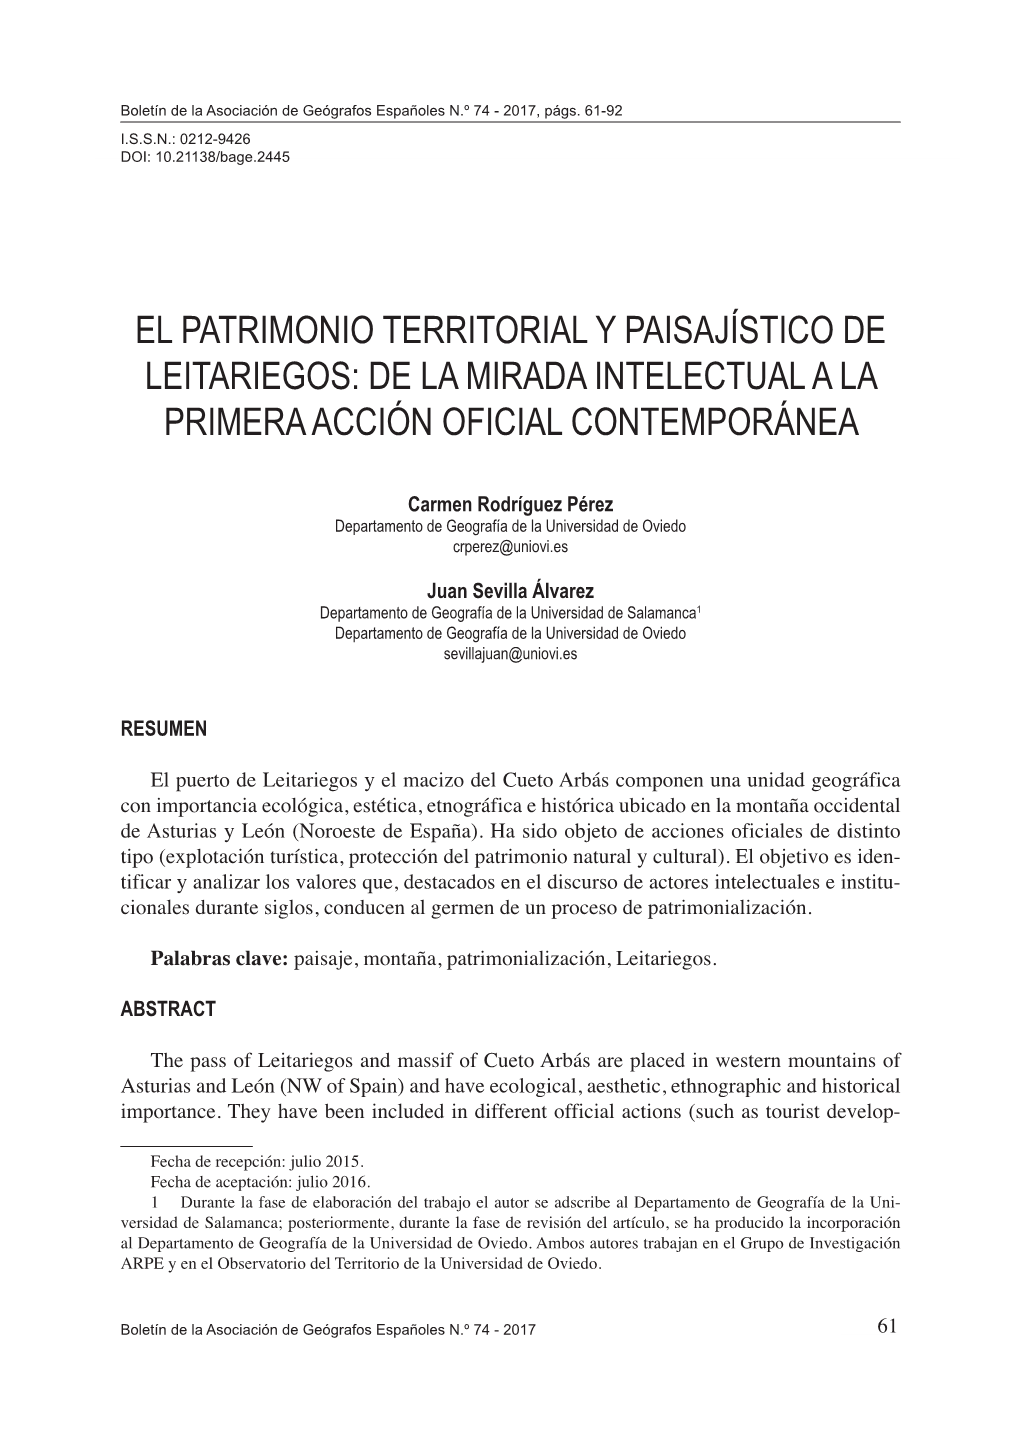 El Patrimonio Territorial Y Paisajístico De Leitariegos: De La Mirada Intelectual a La Primera Acción Oficial Contemporánea